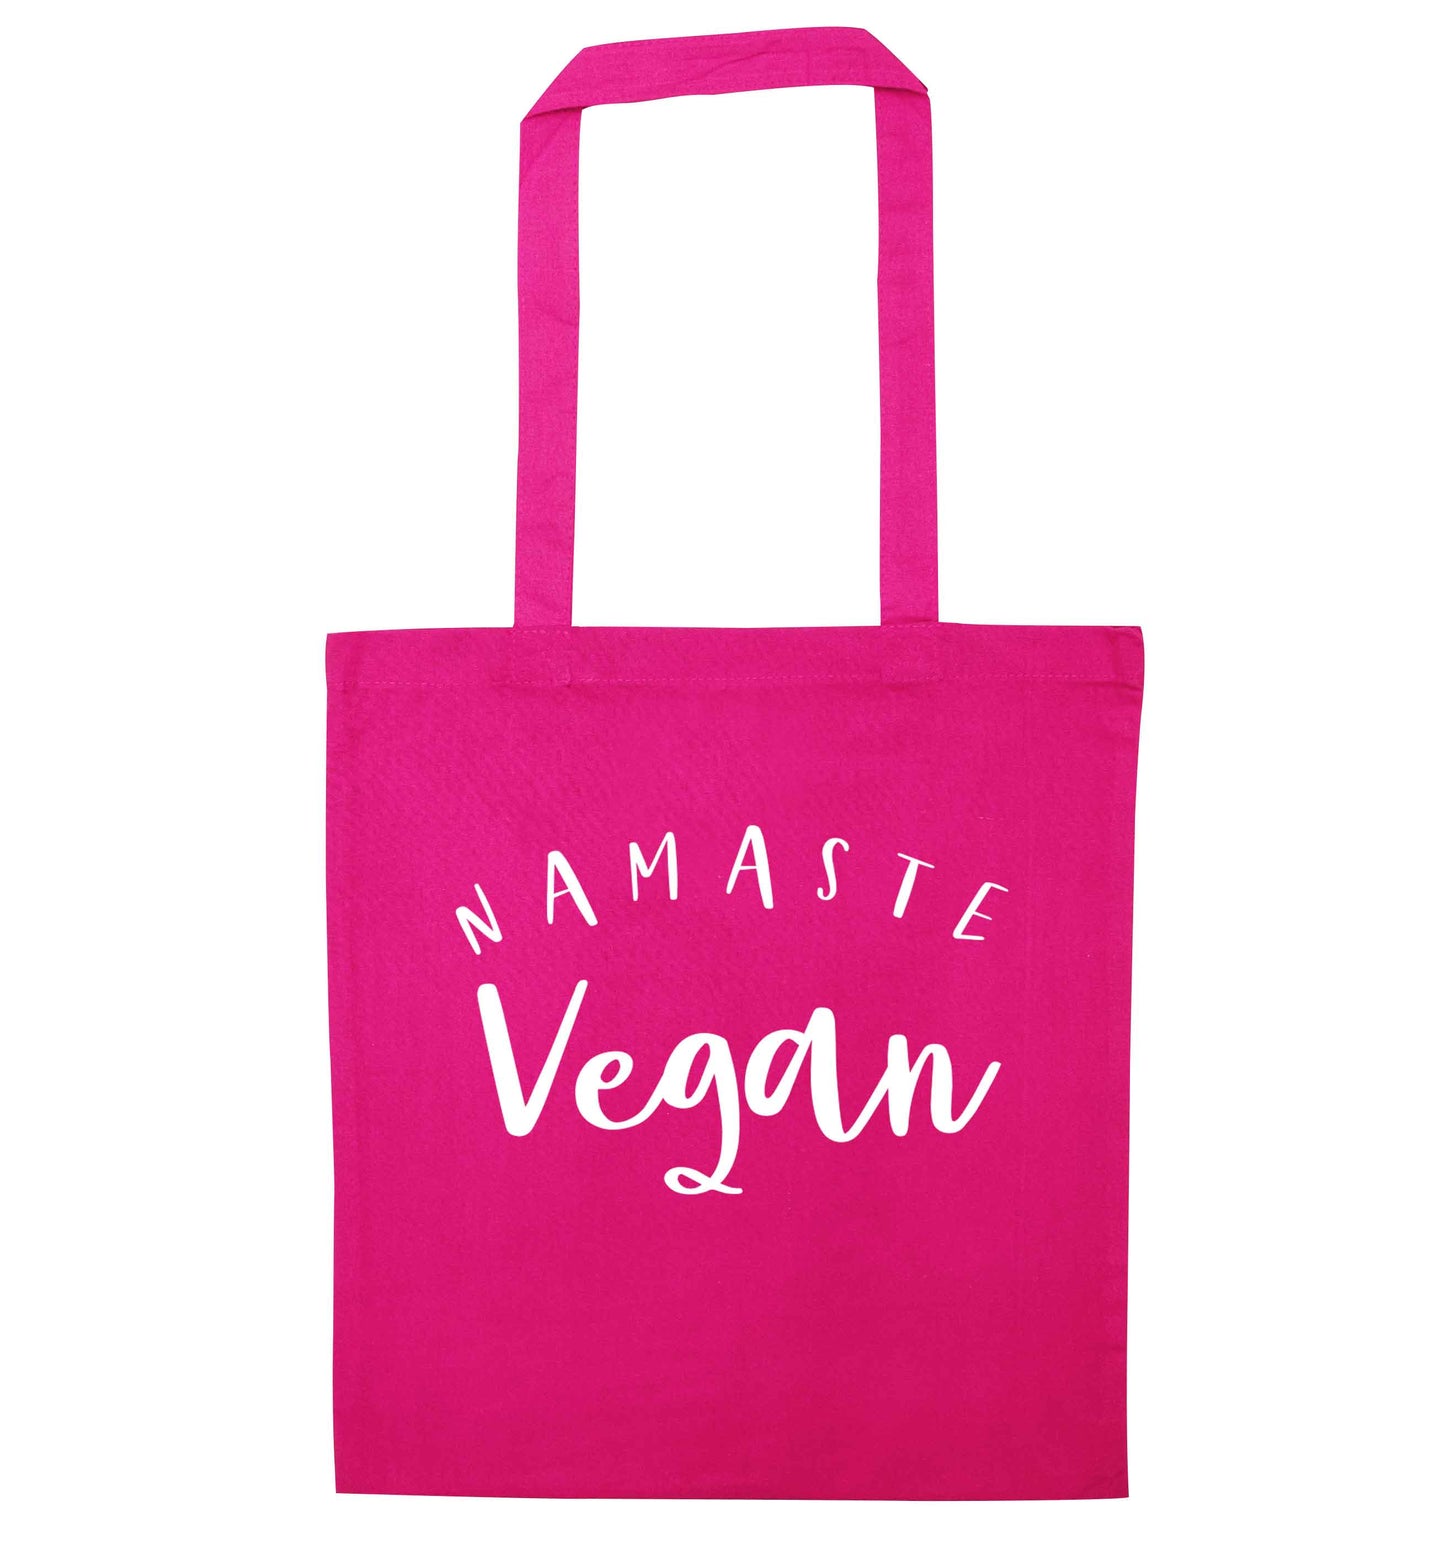 Namaste vegan pink tote bag